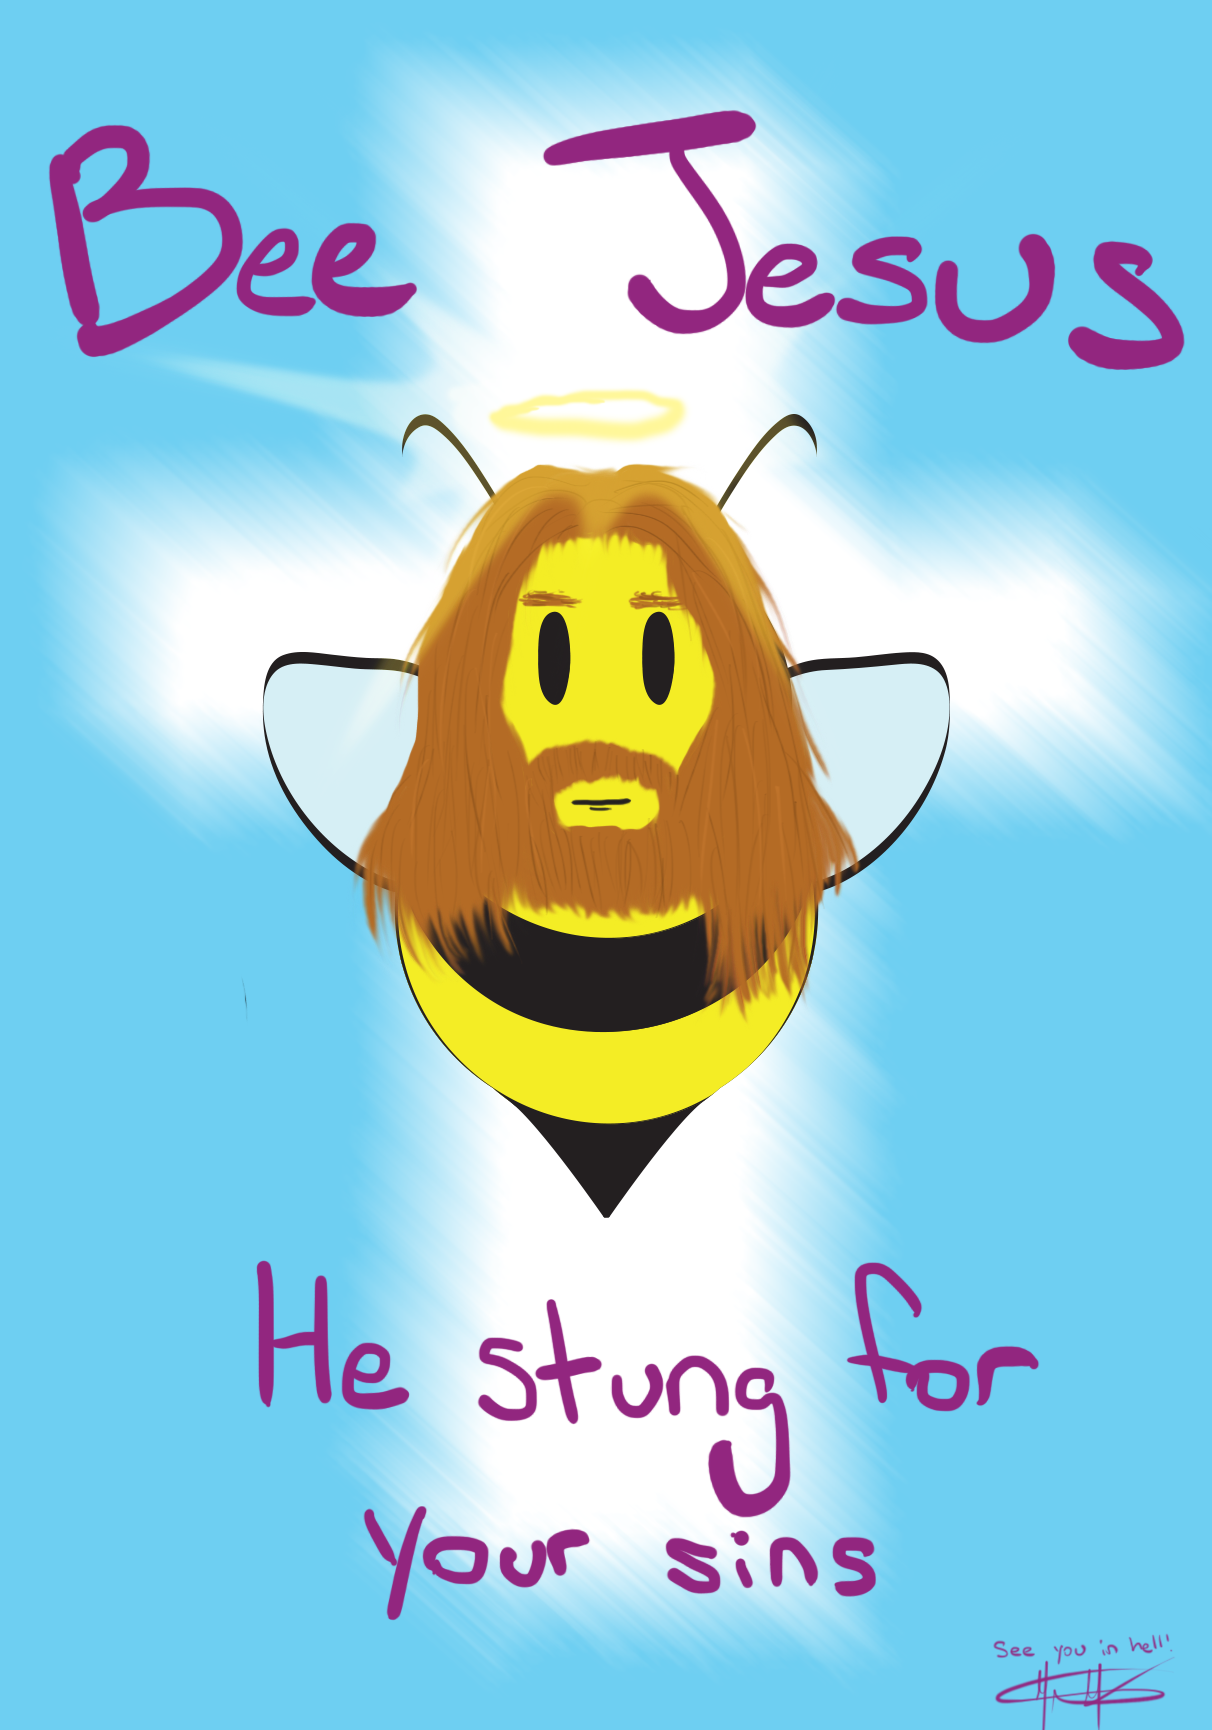 Who the bejesus is Bee Jesus?